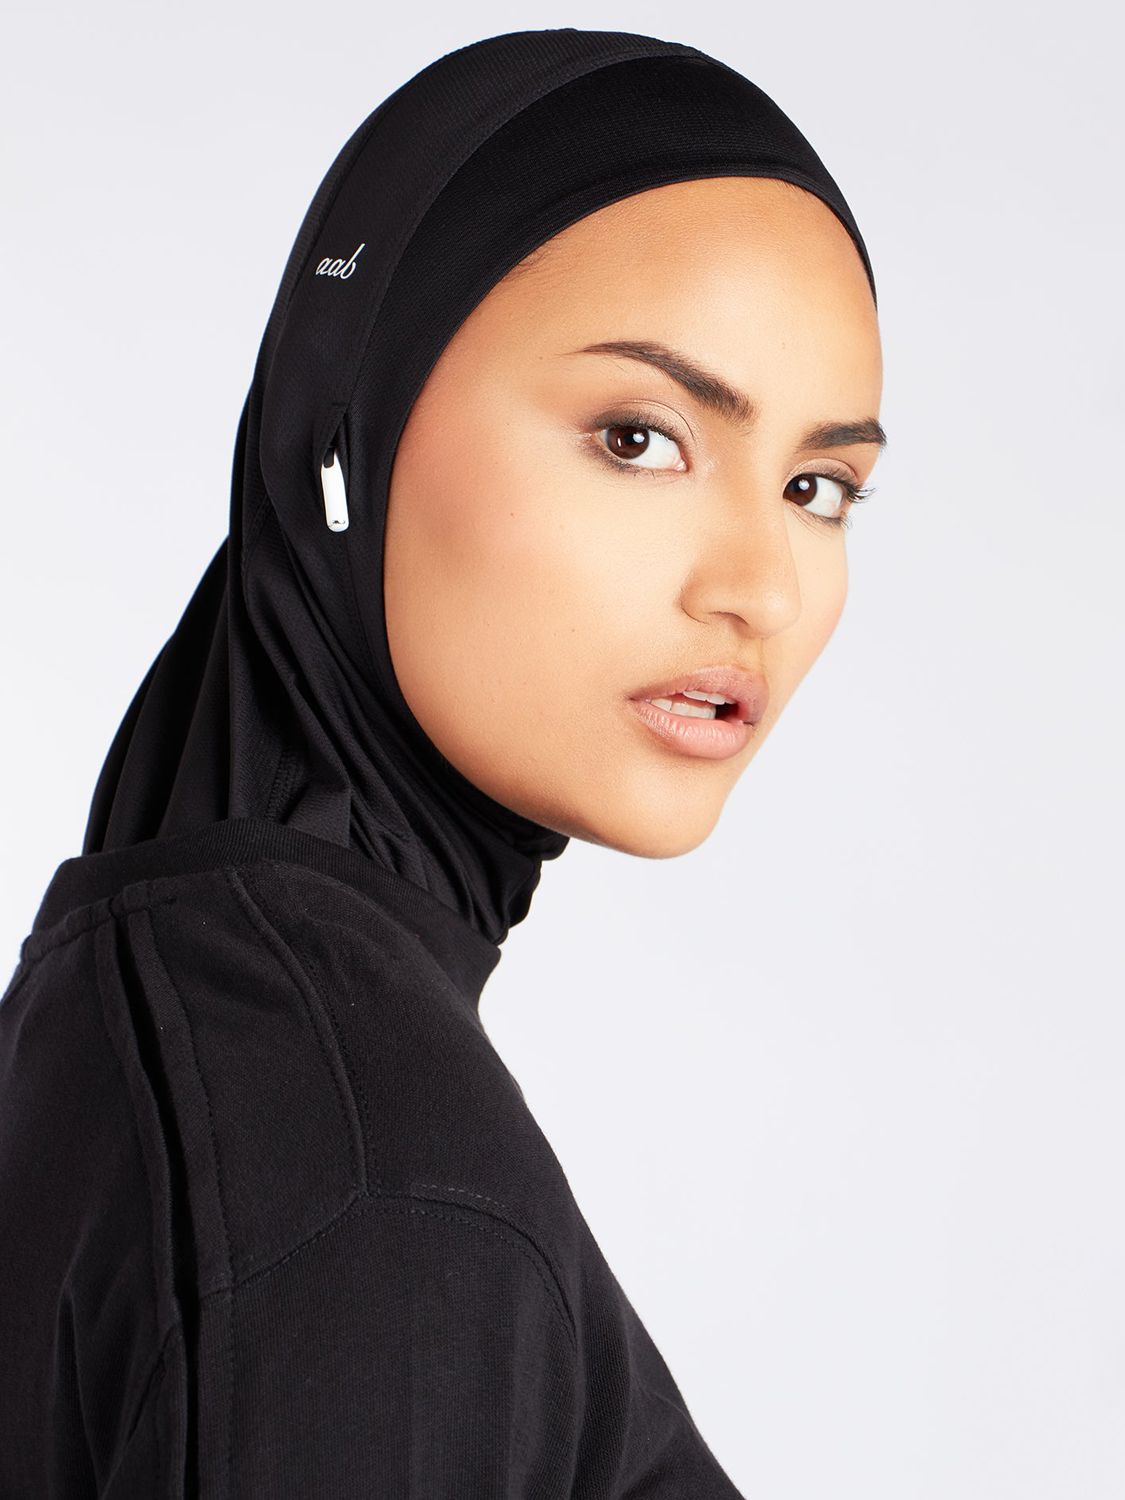 Aab Sports Hijab, Black, One Size